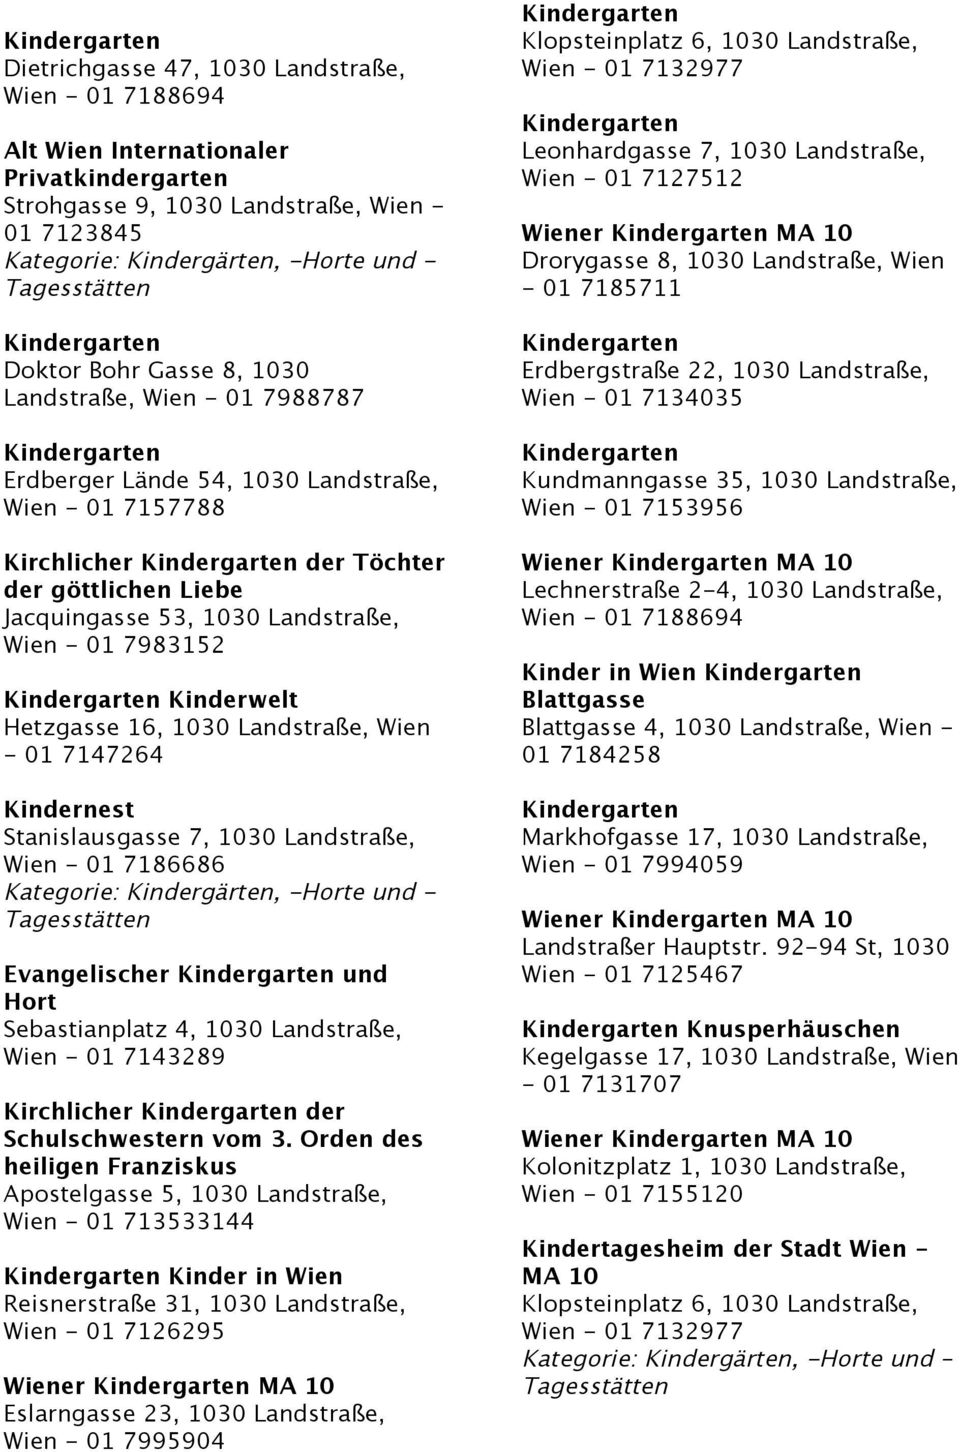 Kindernest Stanislausgasse 7, 1030 Landstraße, Wien - 01 7186686 Evangelischer und Hort Sebastianplatz 4, 1030 Landstraße, Wien - 01 7143289 Kirchlicher der Schulschwestern vom 3.